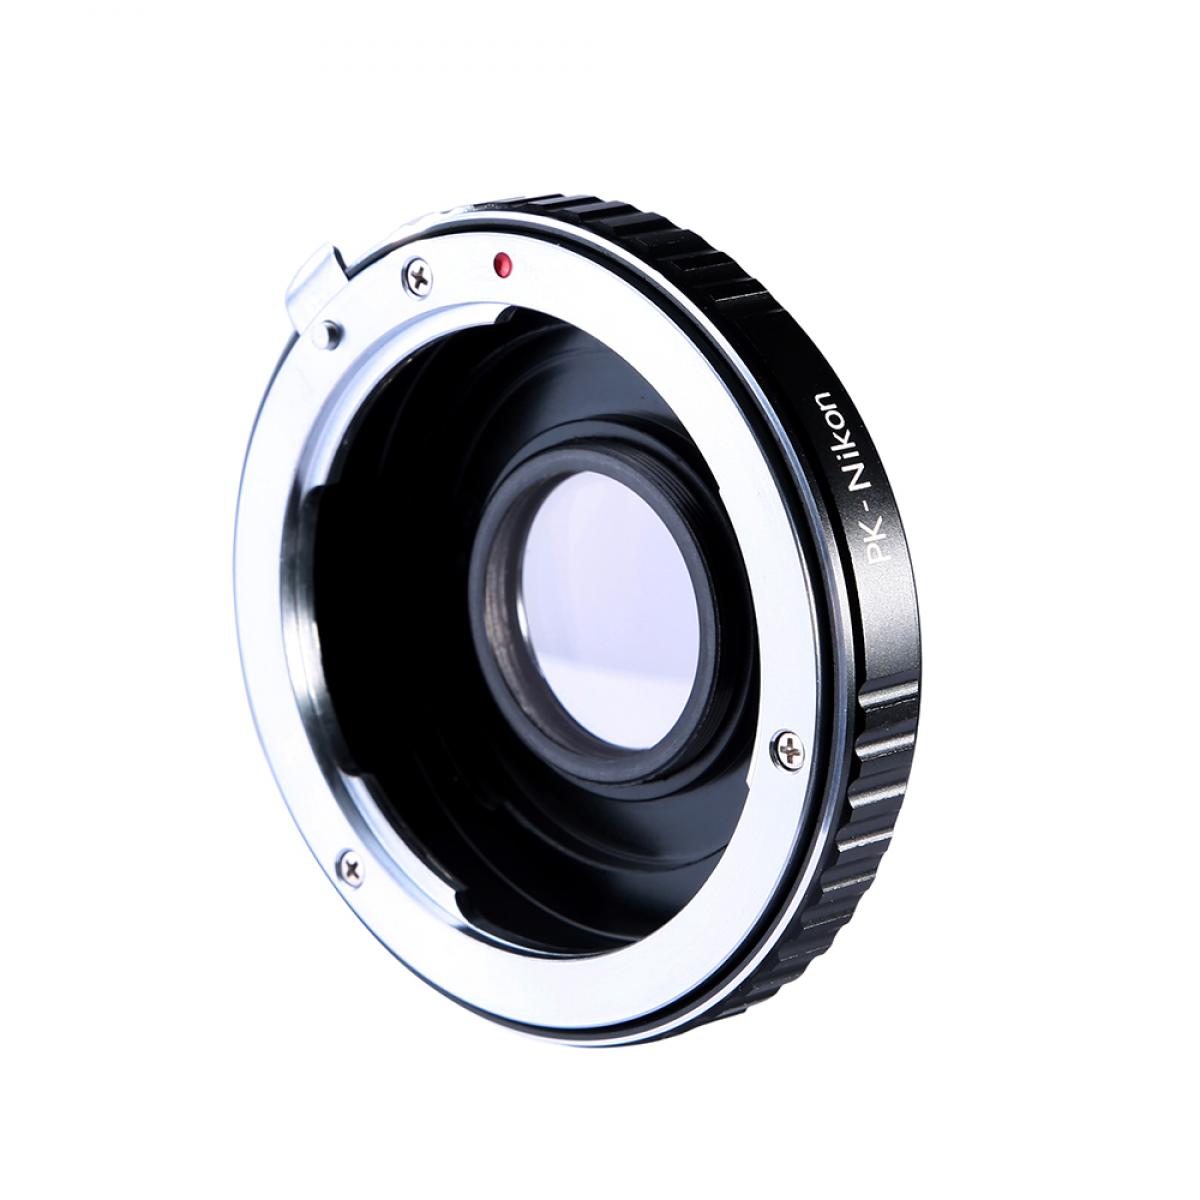 K&F Concept Lens Adapter KF06.121 for PK - Nik